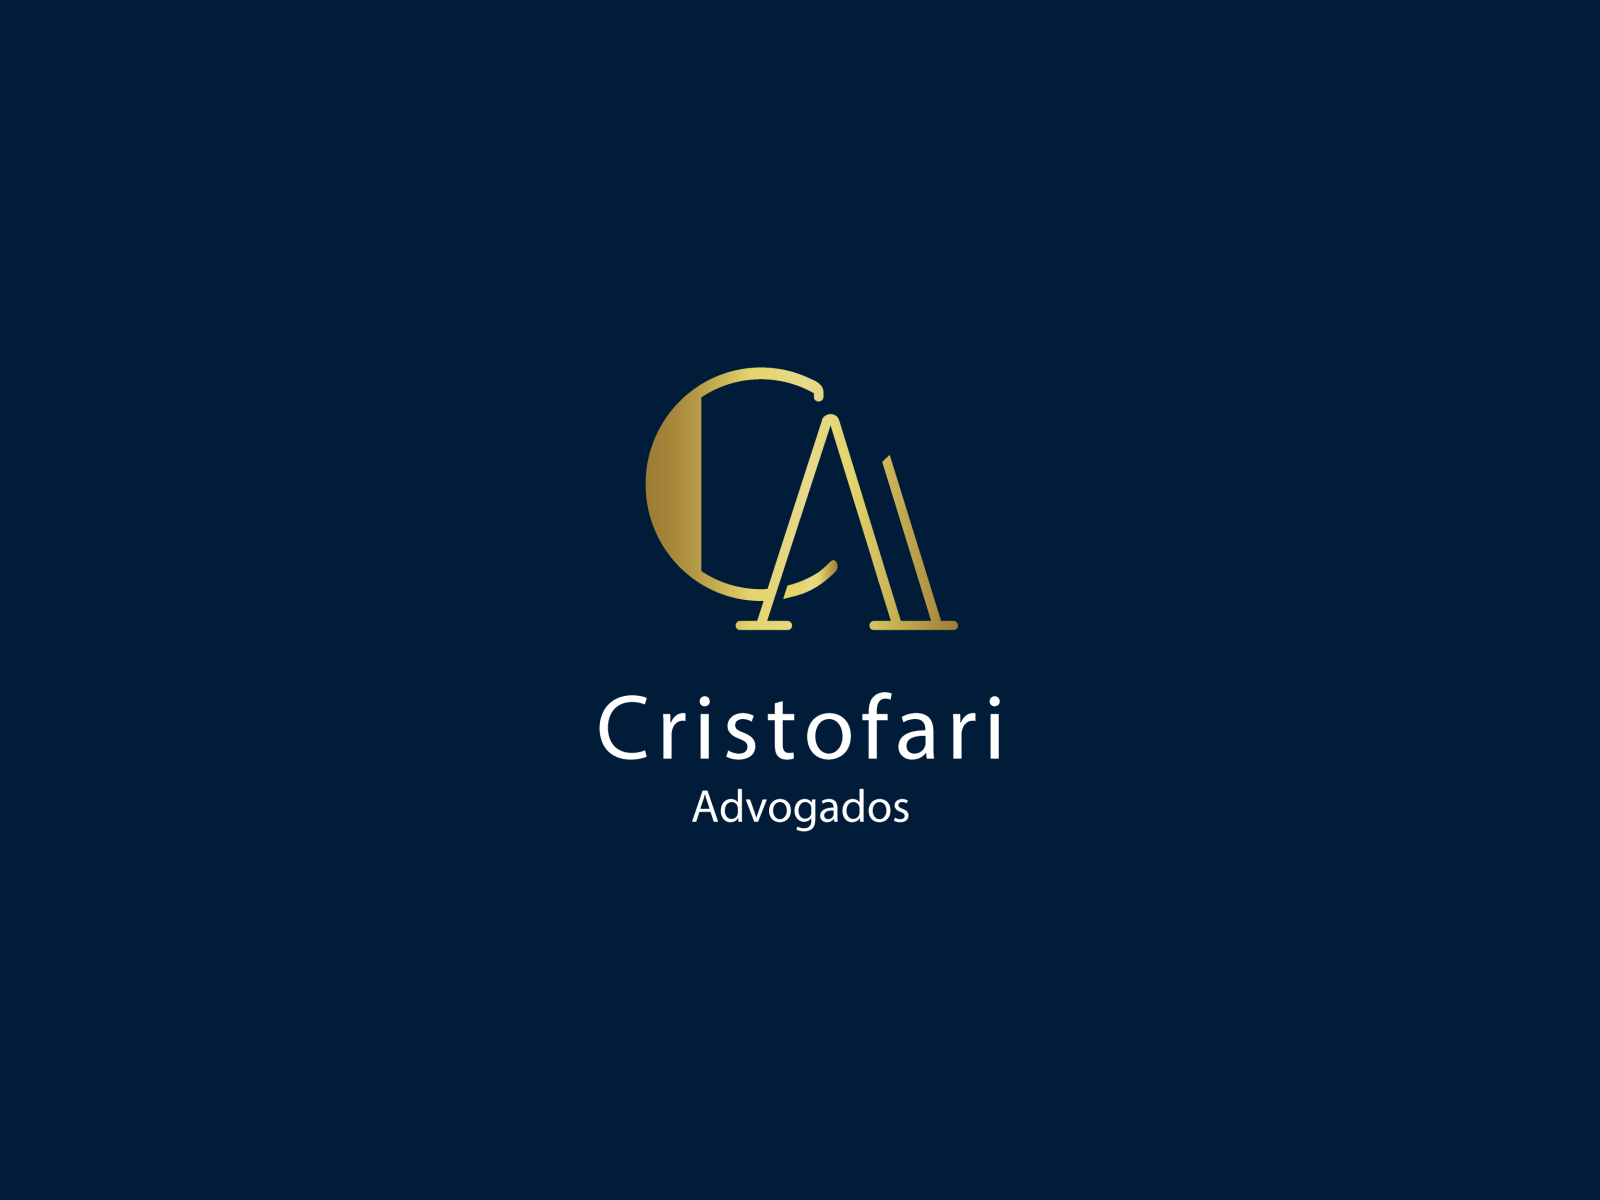 Cristofari Logo by Frederico Vieira on Dribbble